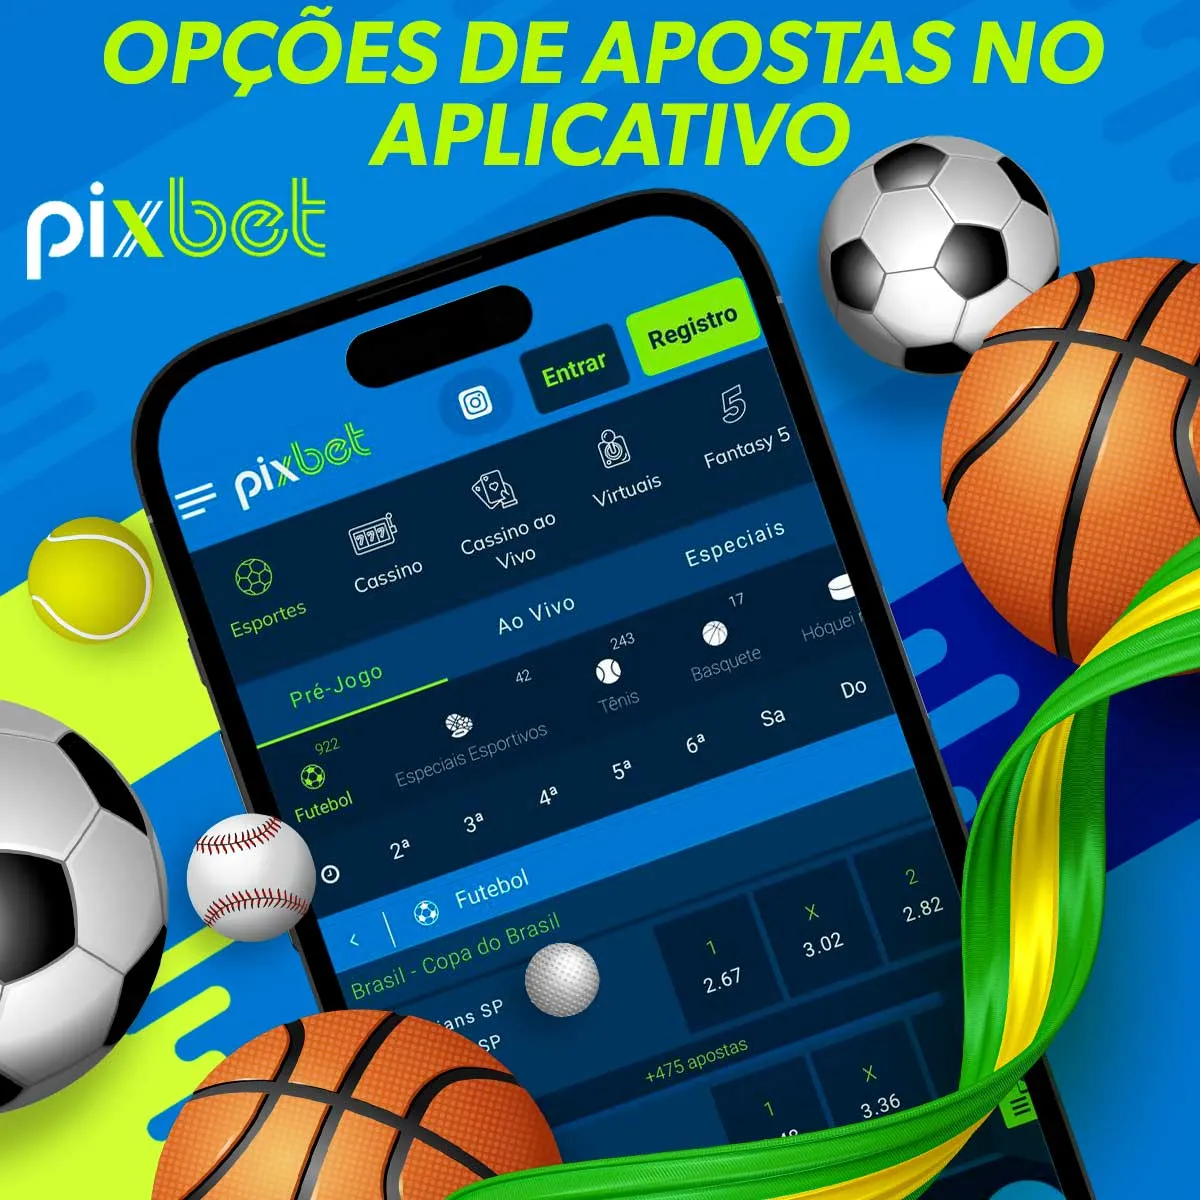 Mercados de apostas no aplicativo Pixbet Brasil